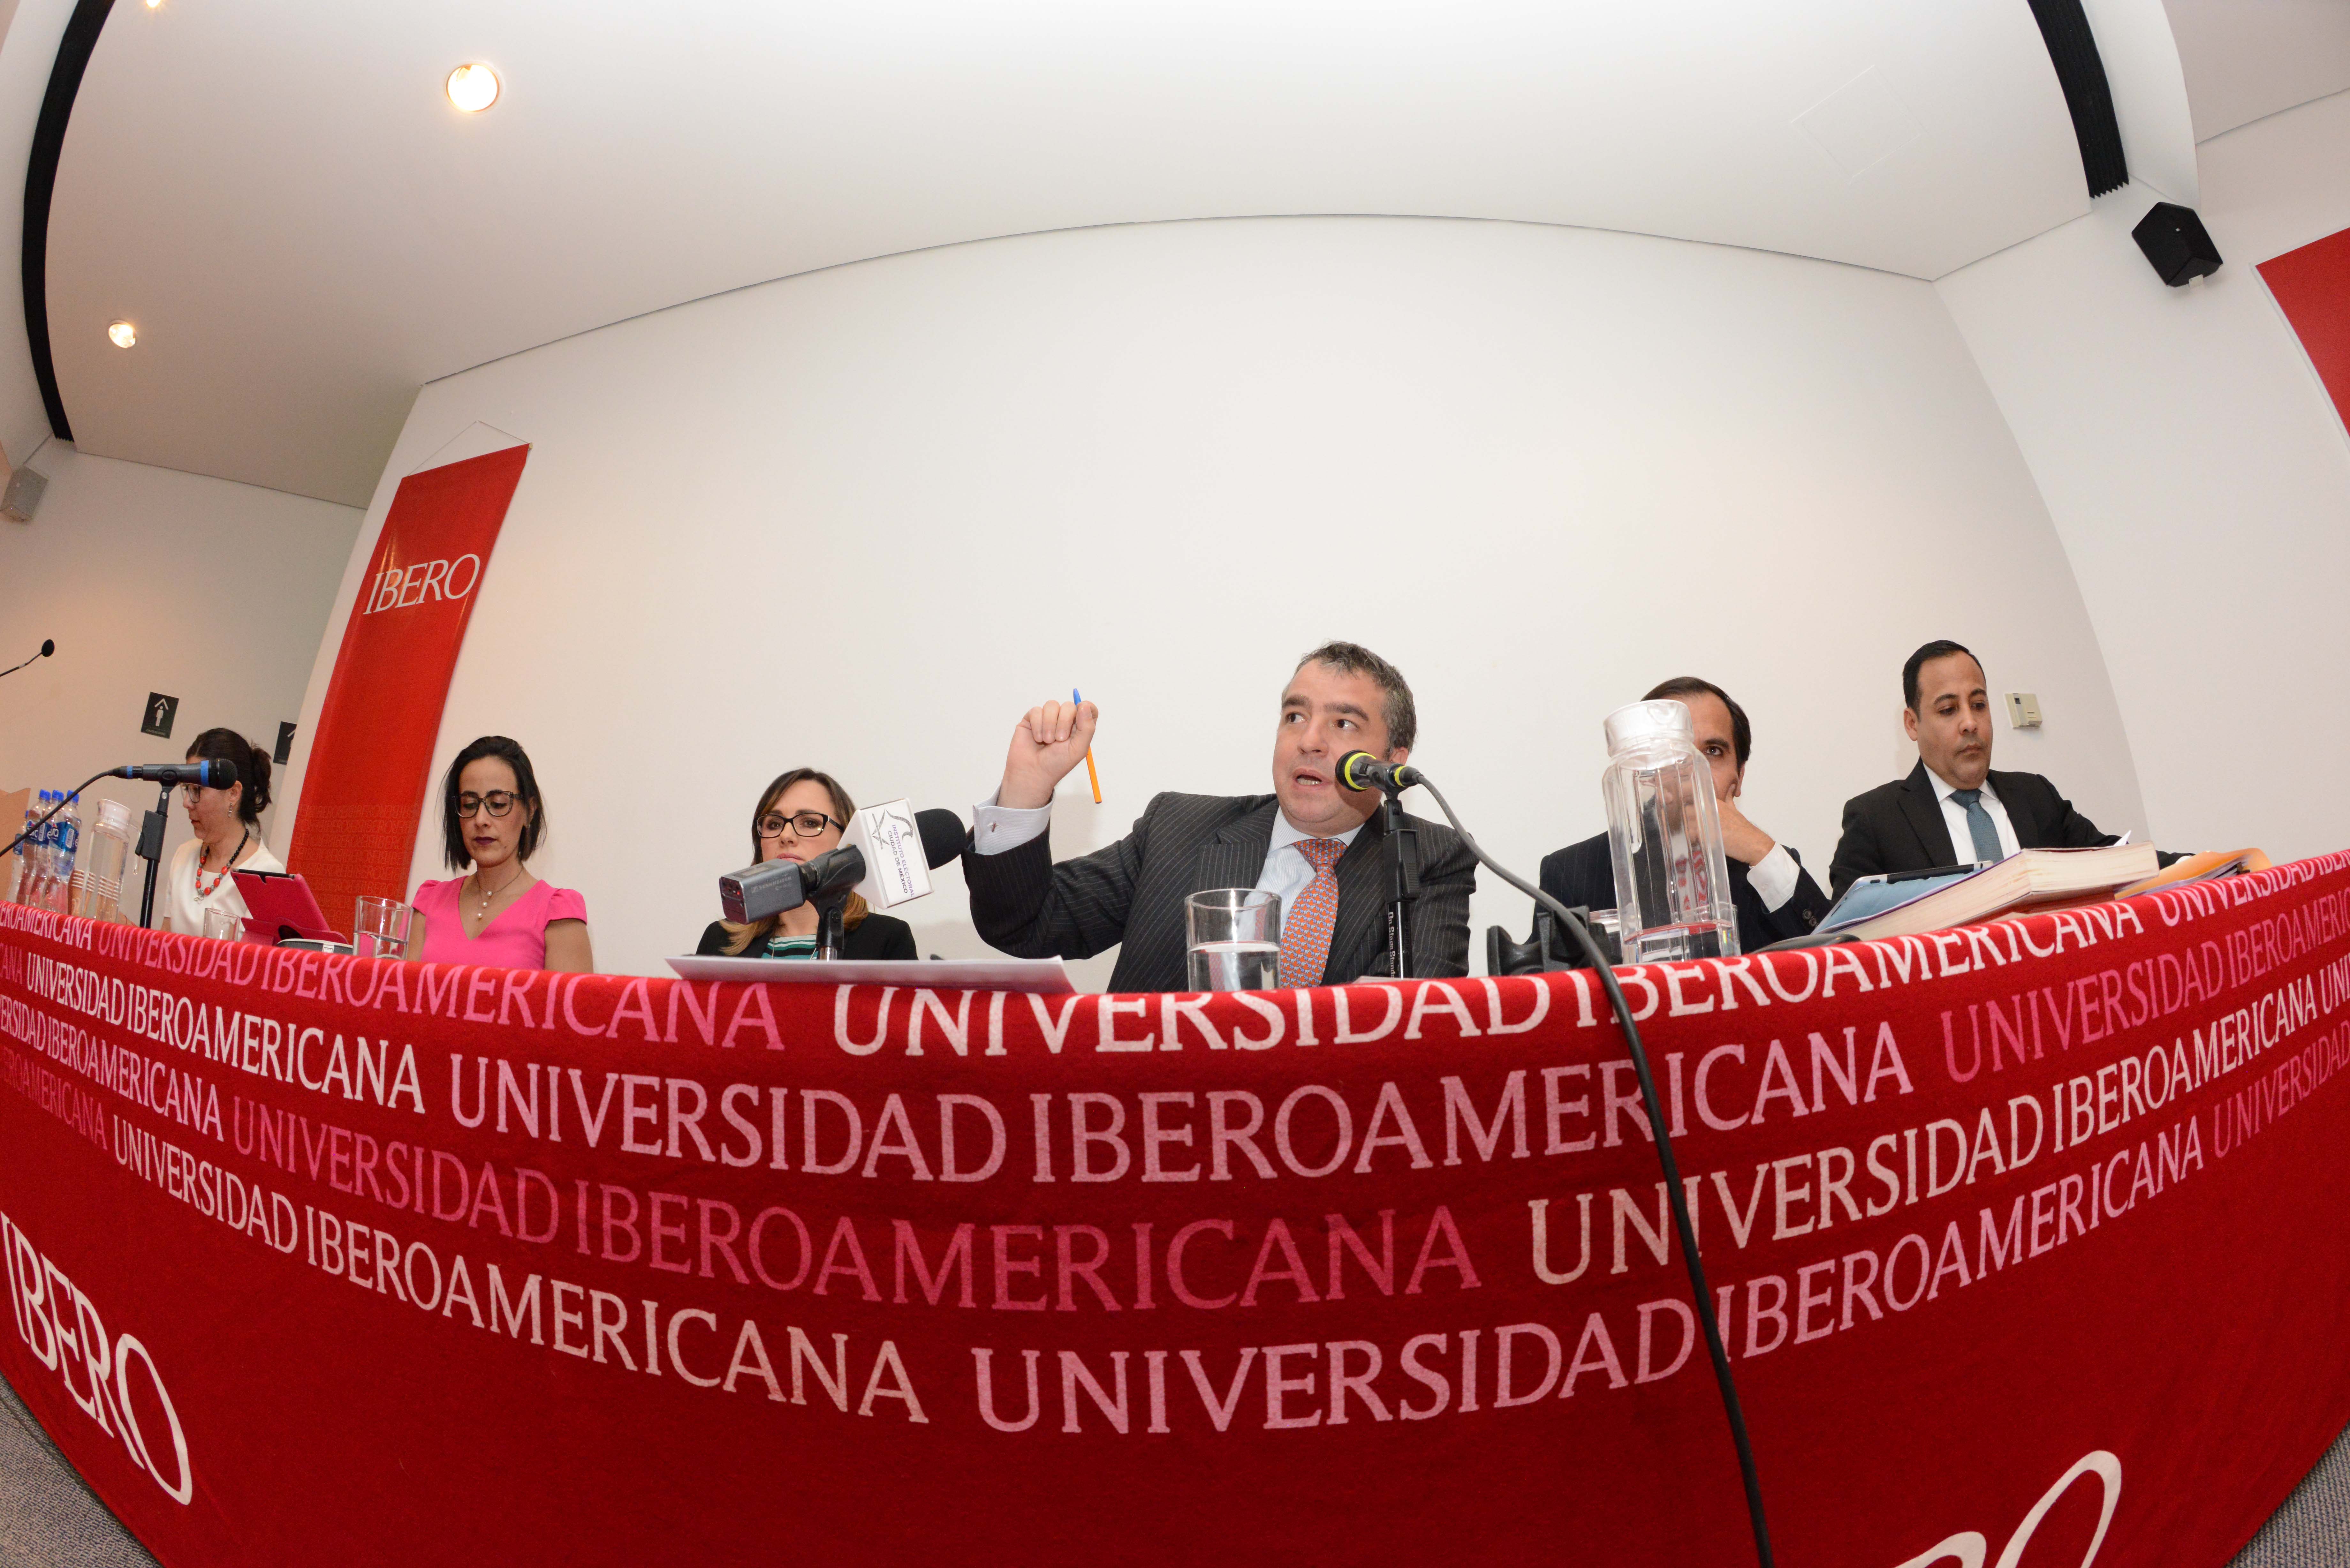 Democracia inclusiva aún con grandes retos: Yuri Gabriel Beltrán Miranda